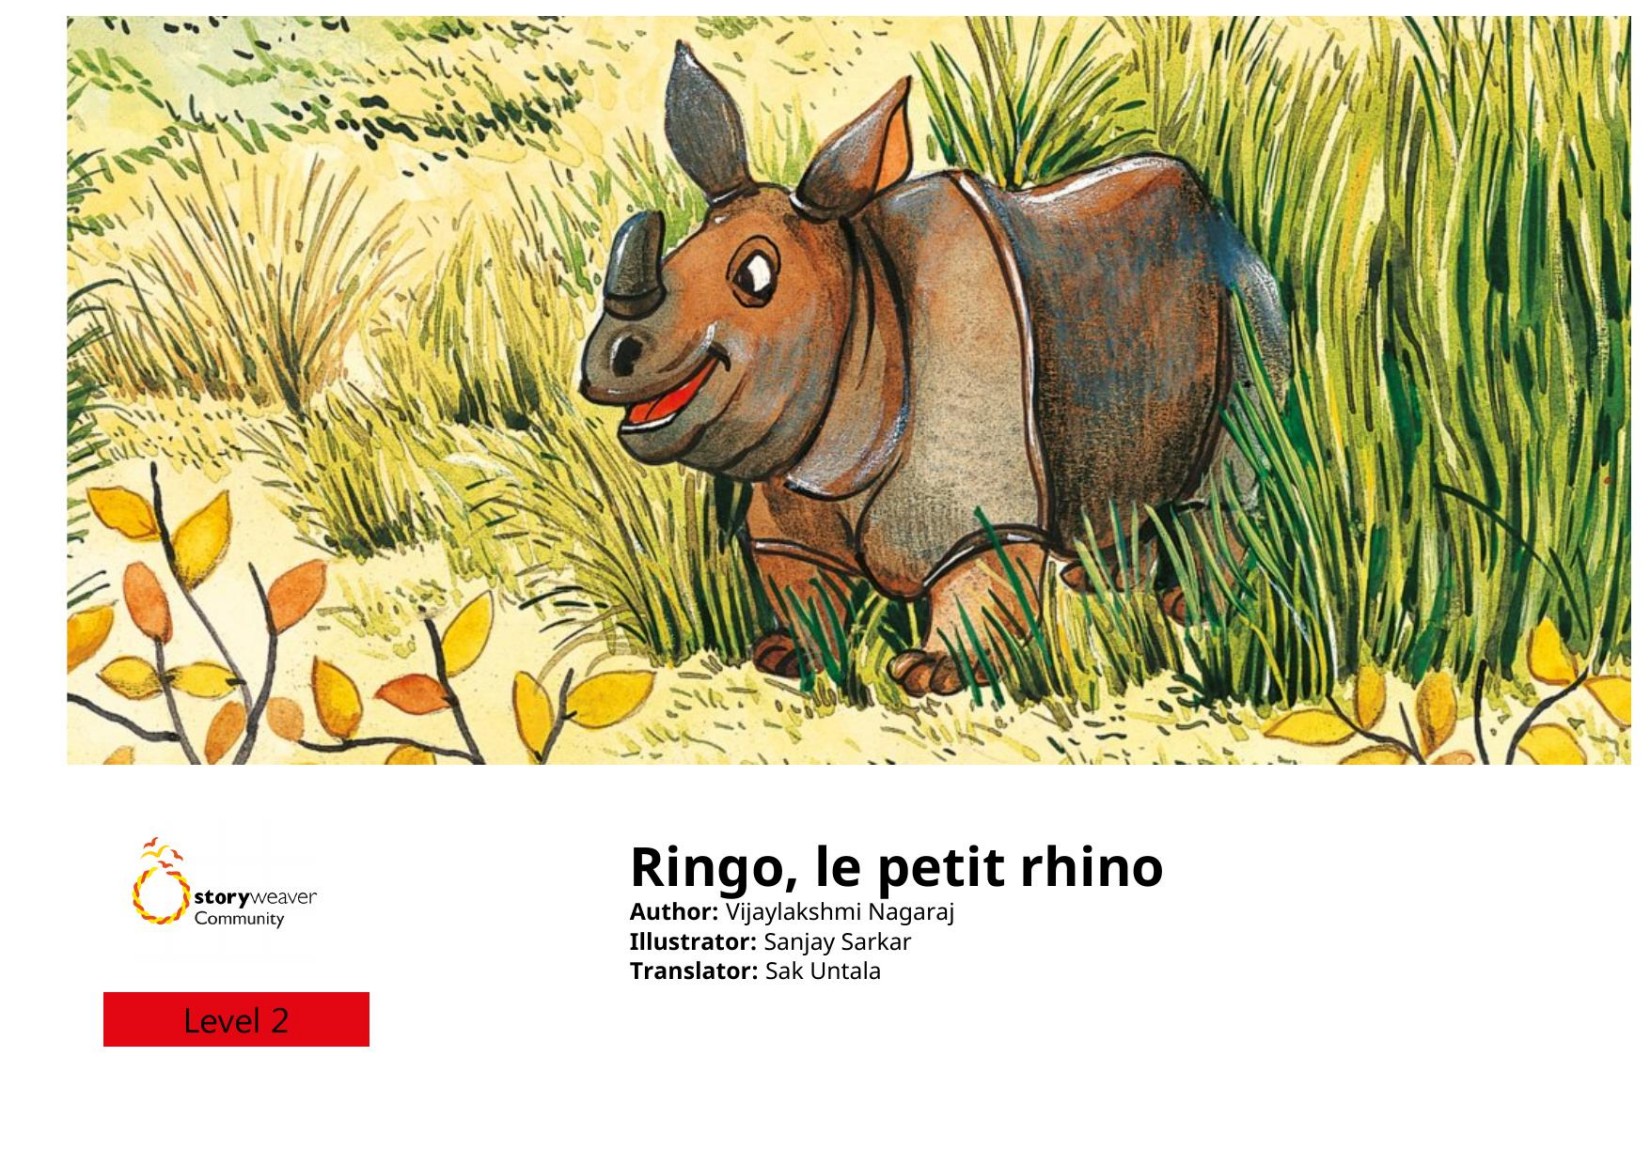 Ringo, le petit rhino